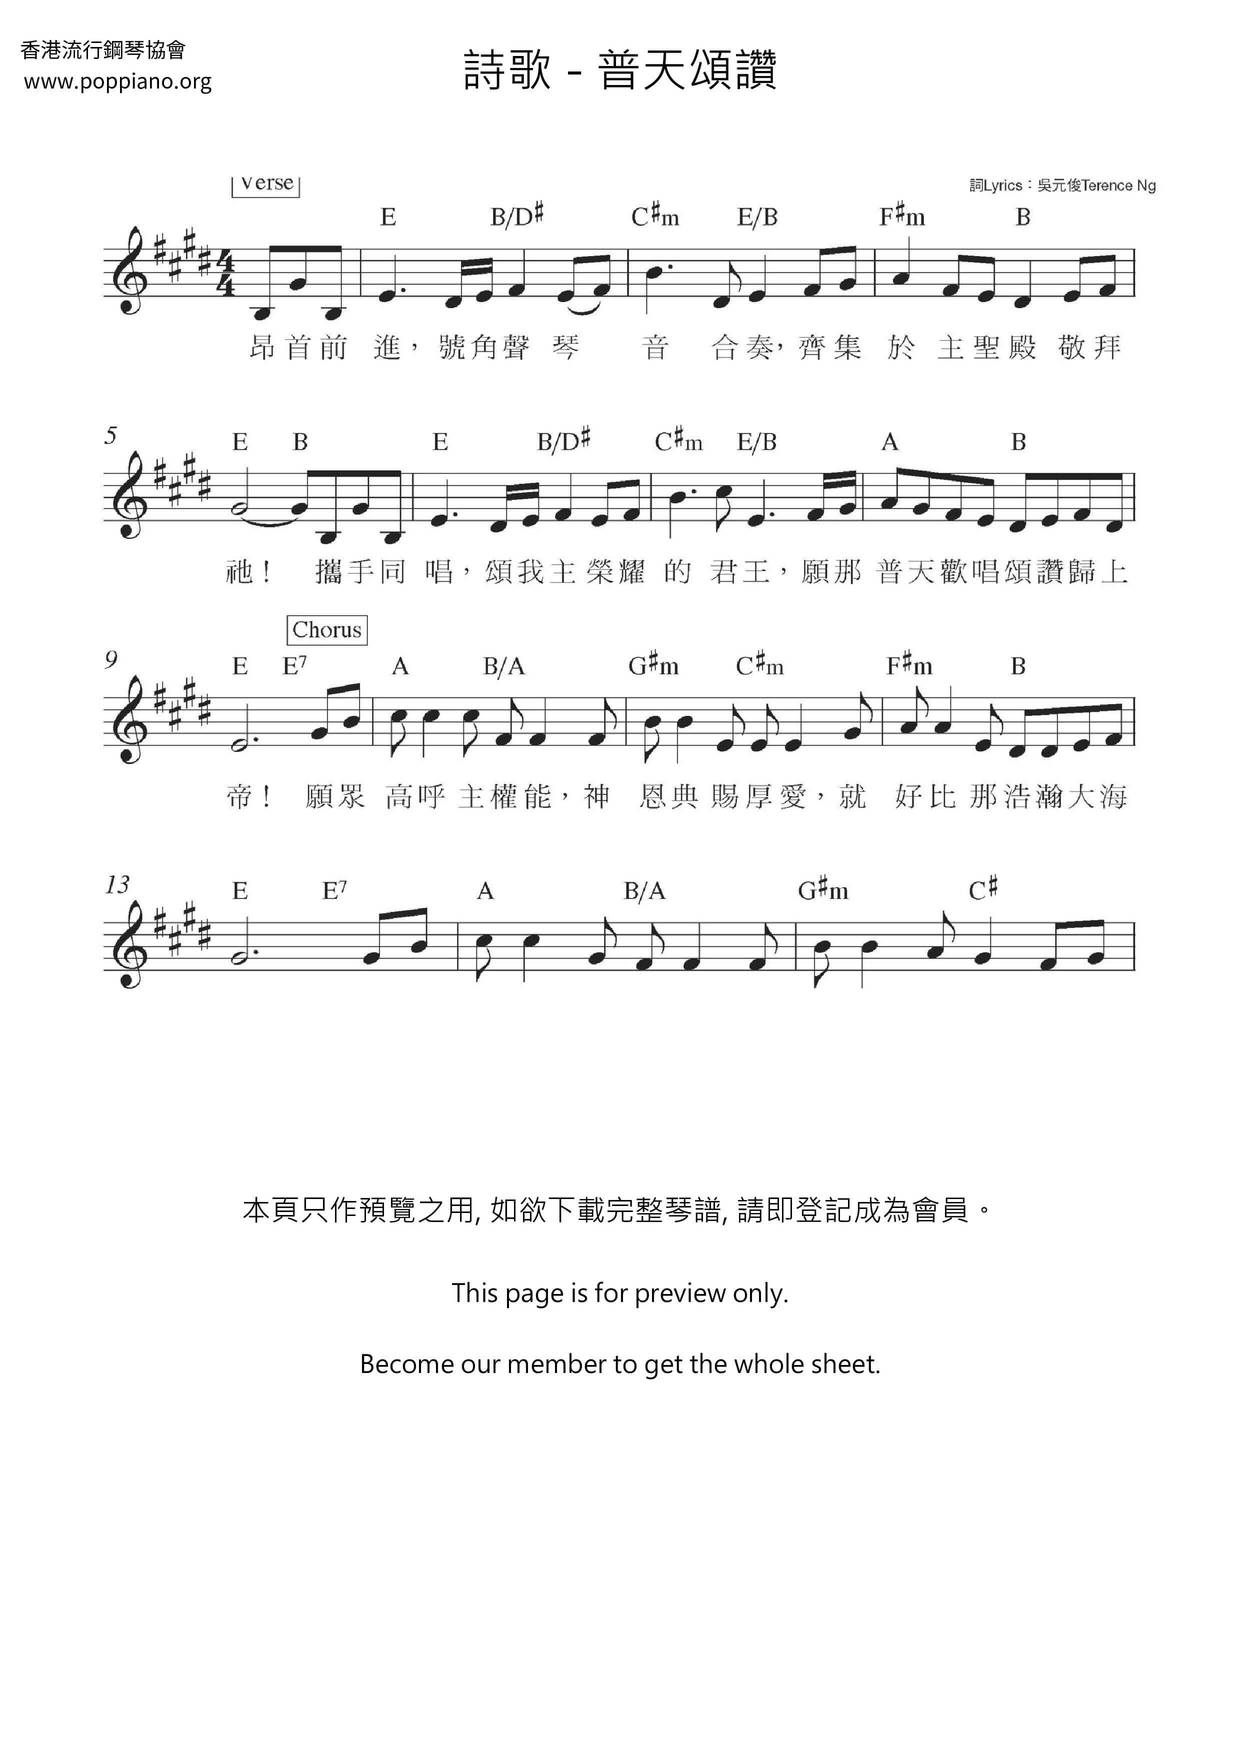 Putian Songzan Score